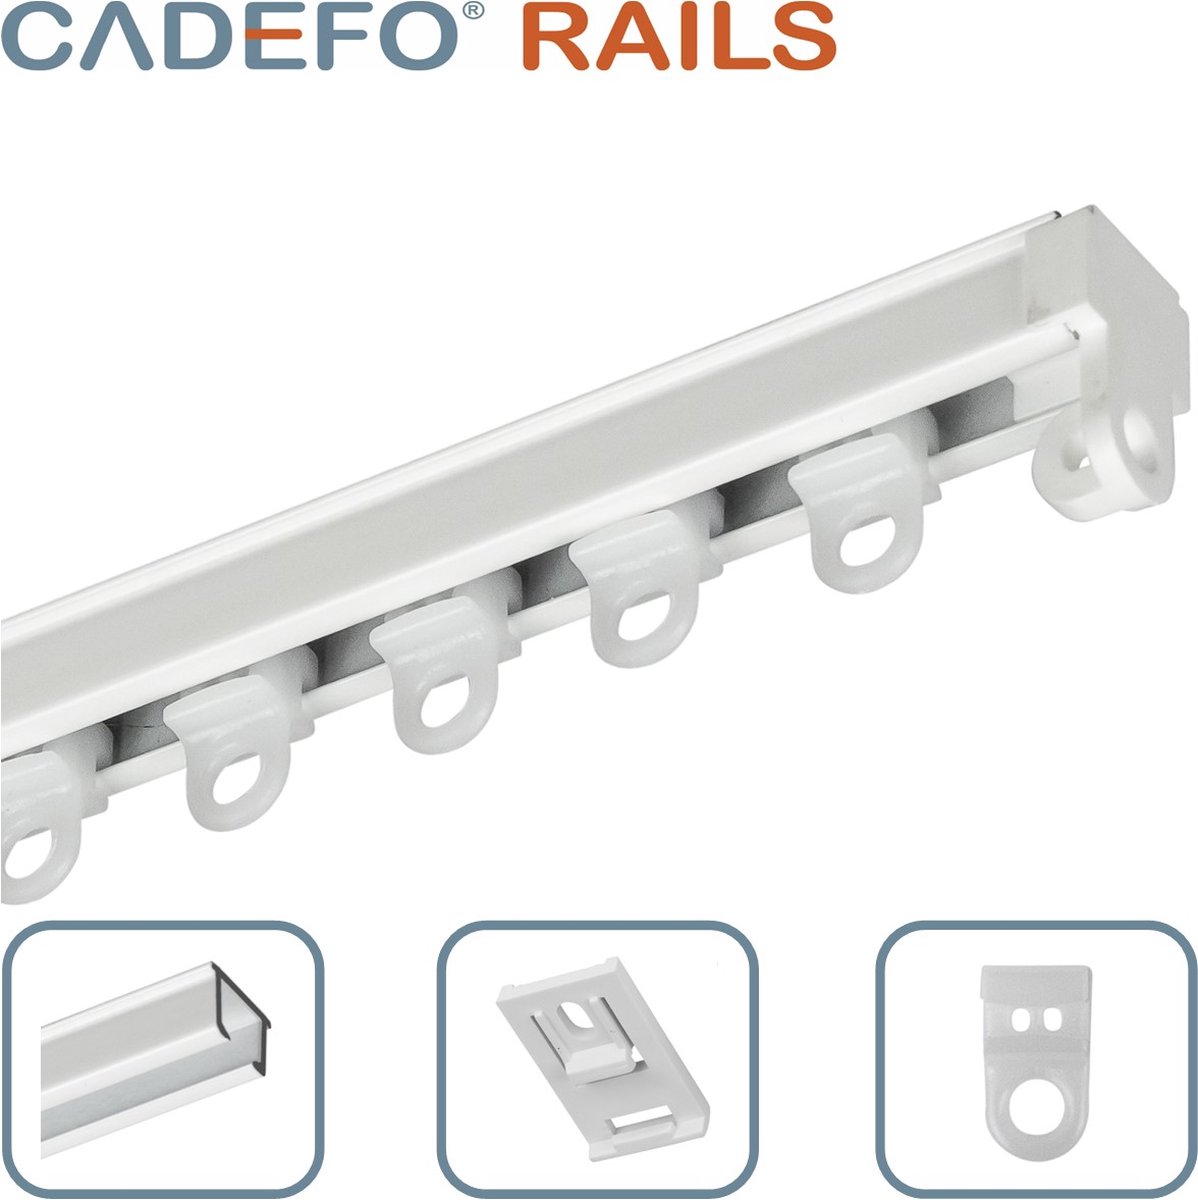 CADEFO RAILS (101 - 150 cm) Gordijnrails - Compleet op maat! - UIT 1 STUK - Leverbaar tot 6 meter - Plafondbevestiging - Lengte 126 cm